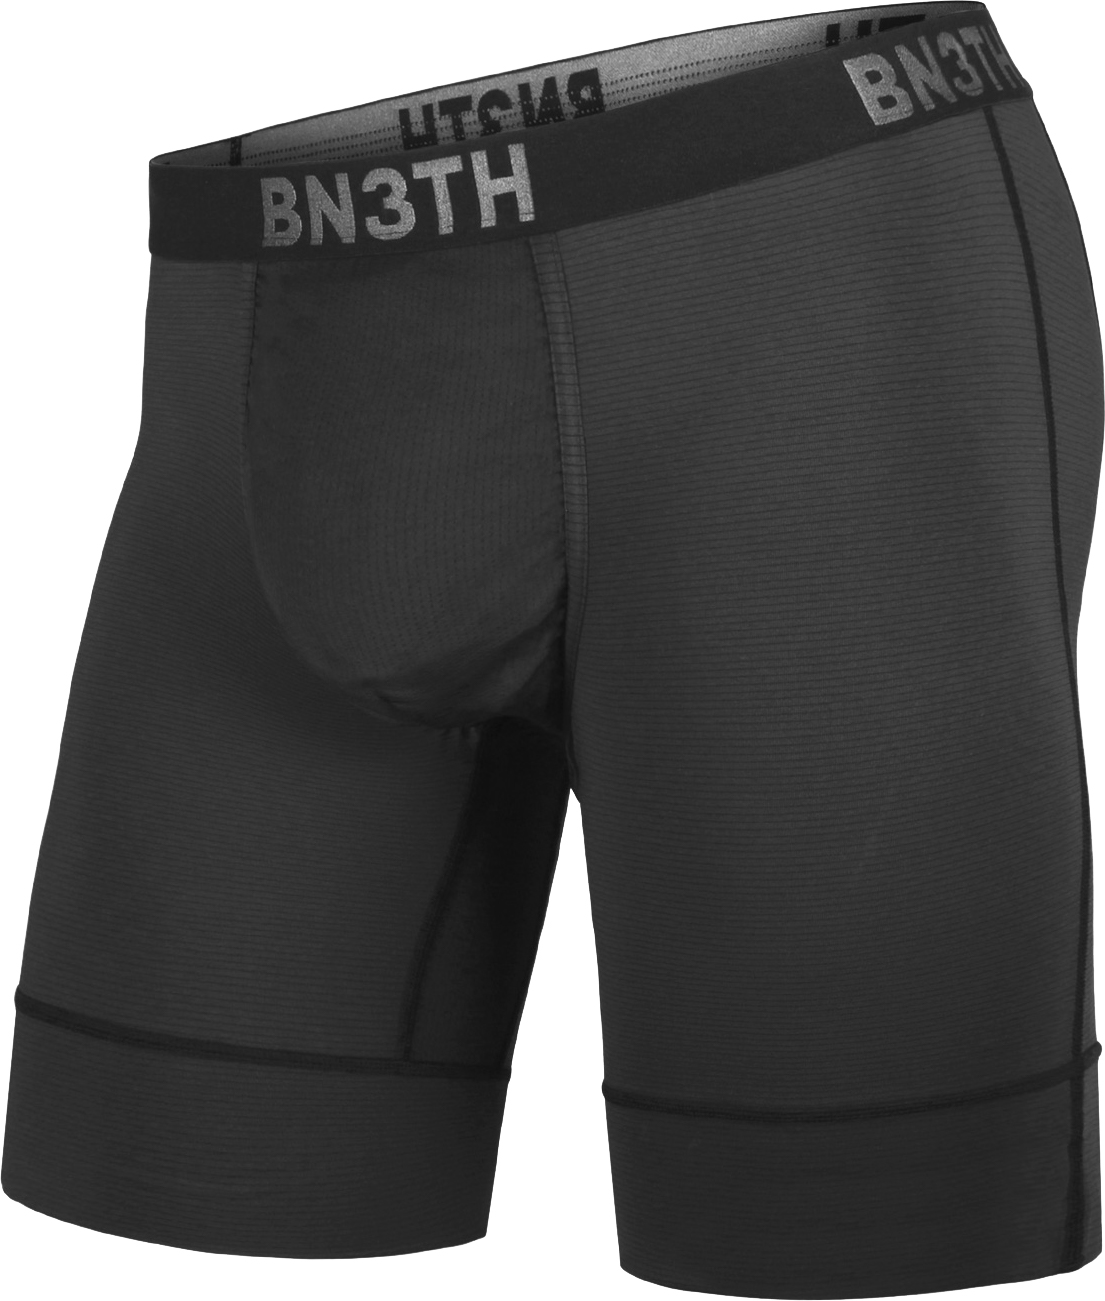 BN3TH Pro Ionic+ Boxer Brief  Dunbar & Corsa Cycles - Dunbar Cycles &  Corsa Cycles